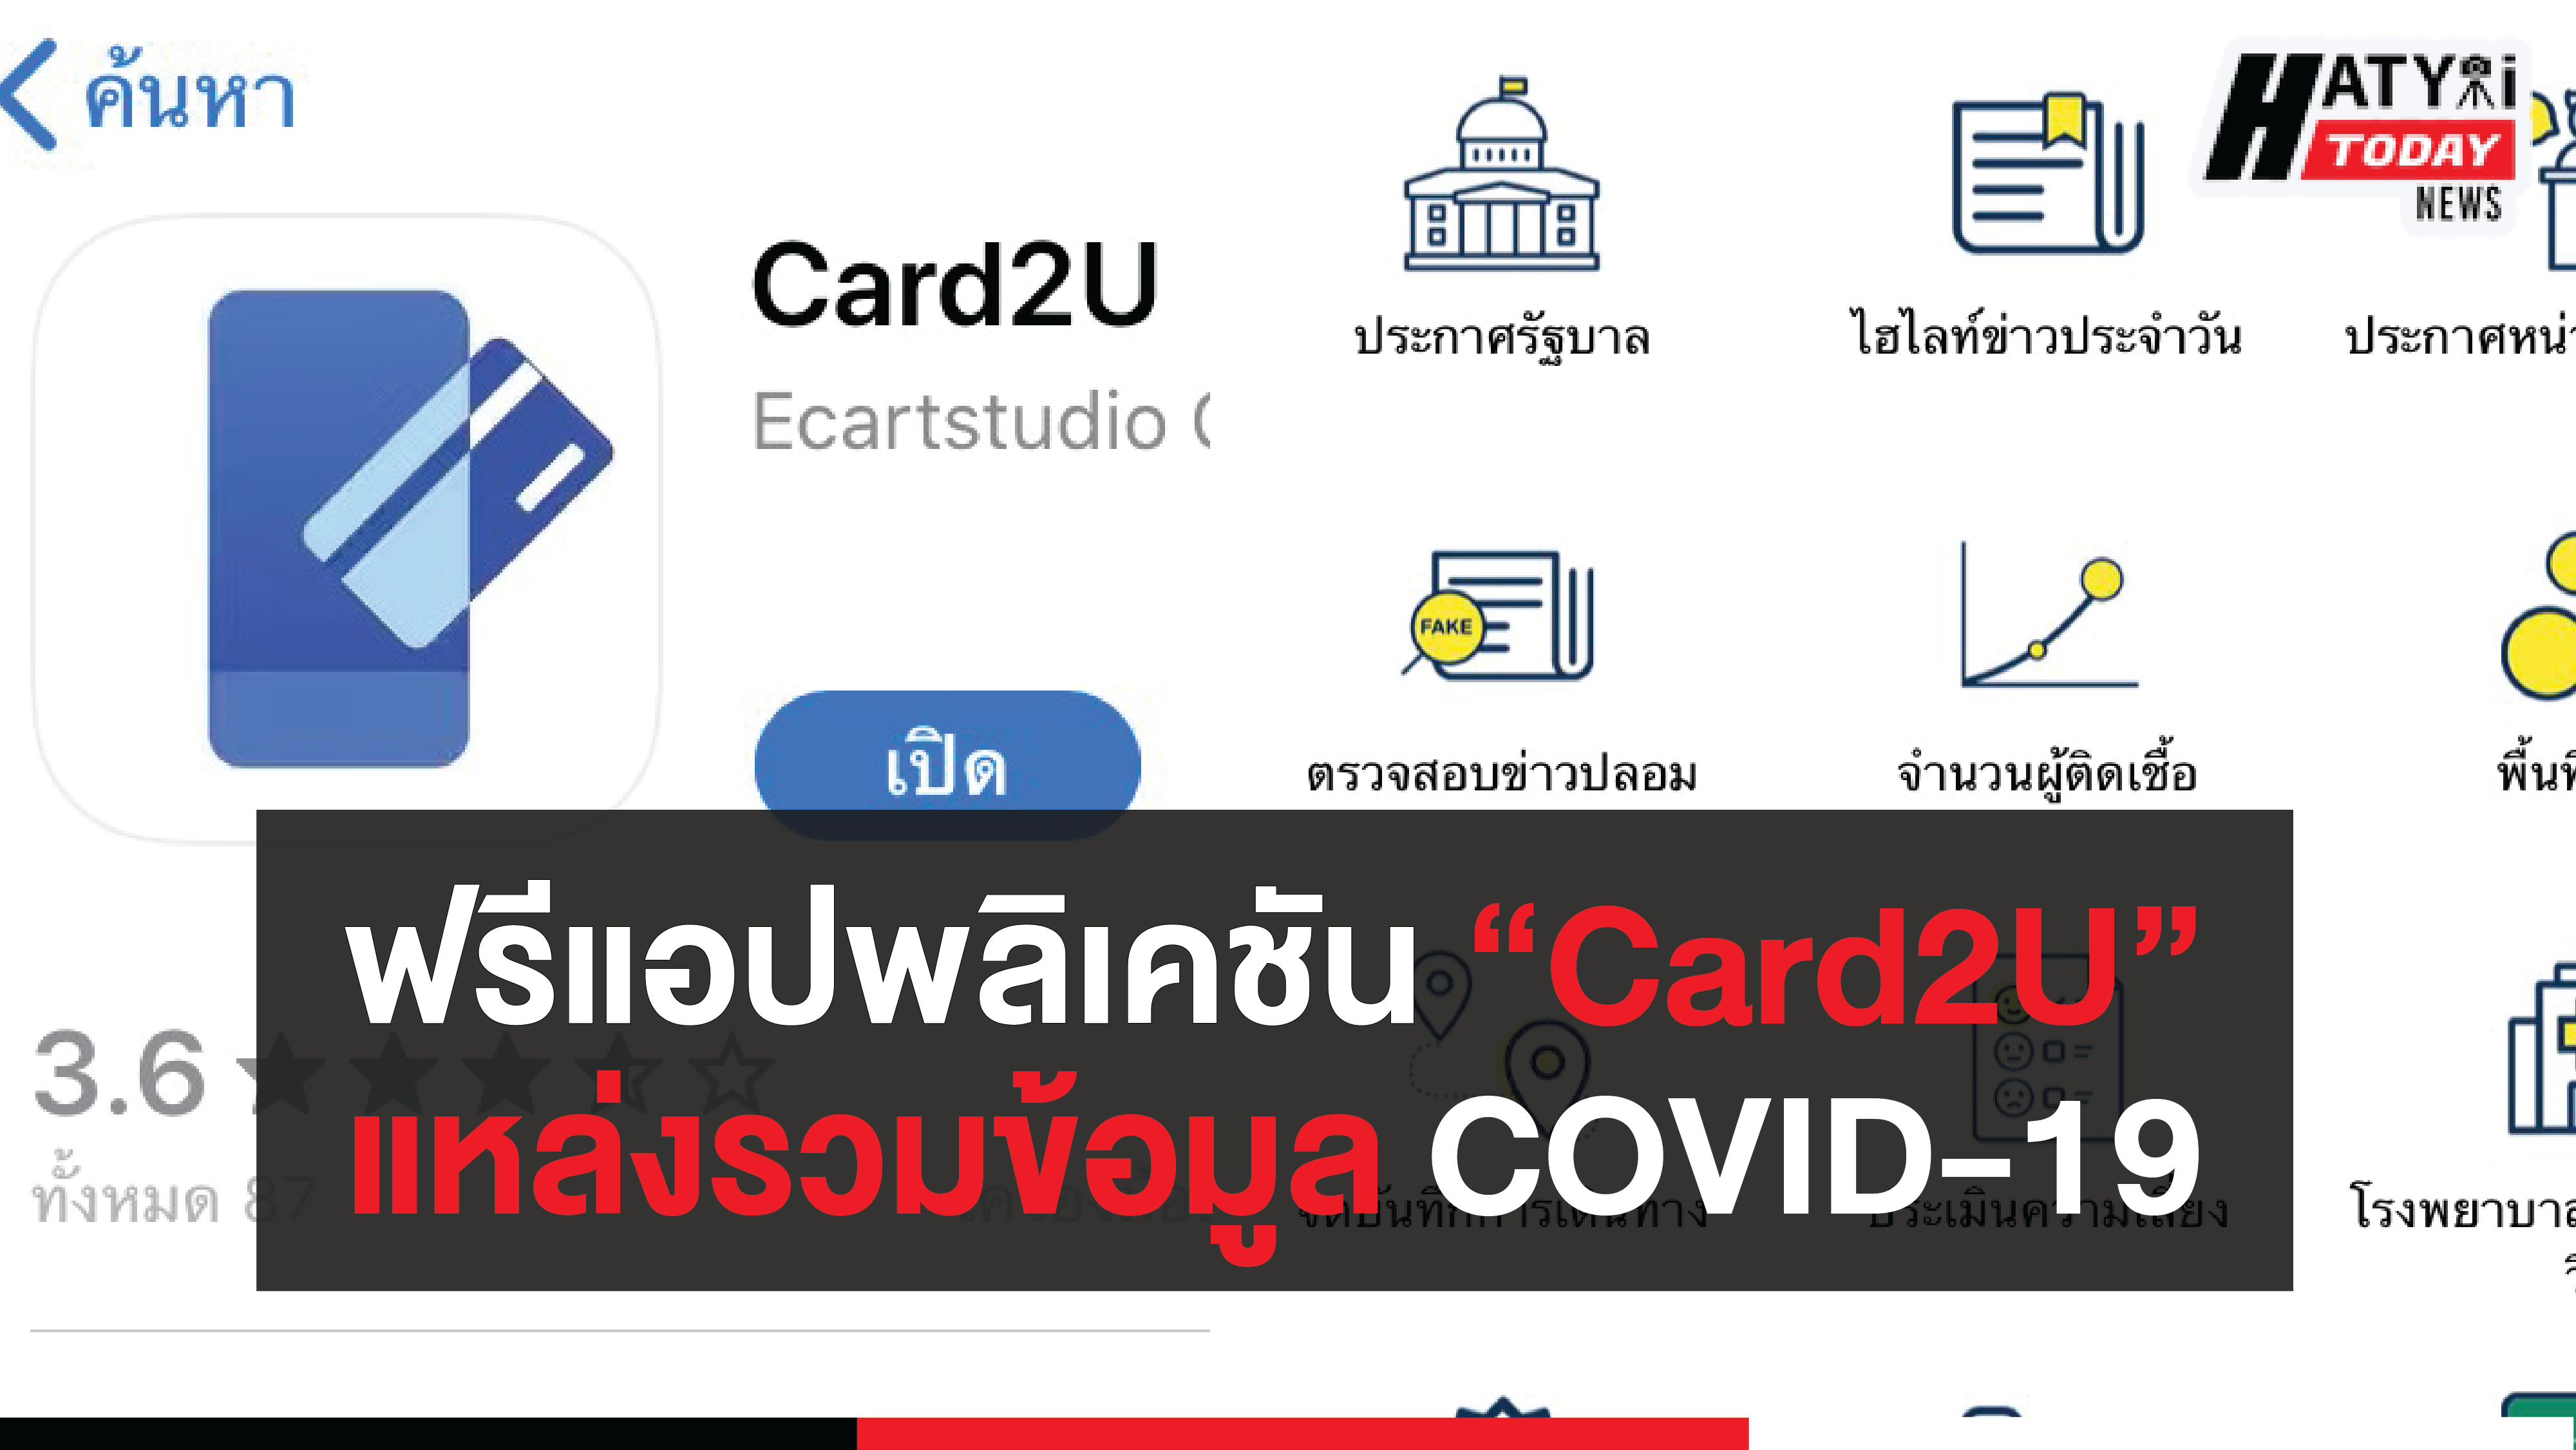 แอปพลิเคชัน “Card2U” แหล่งรวมข้อมูล COVID-19 ถึงประชาชน